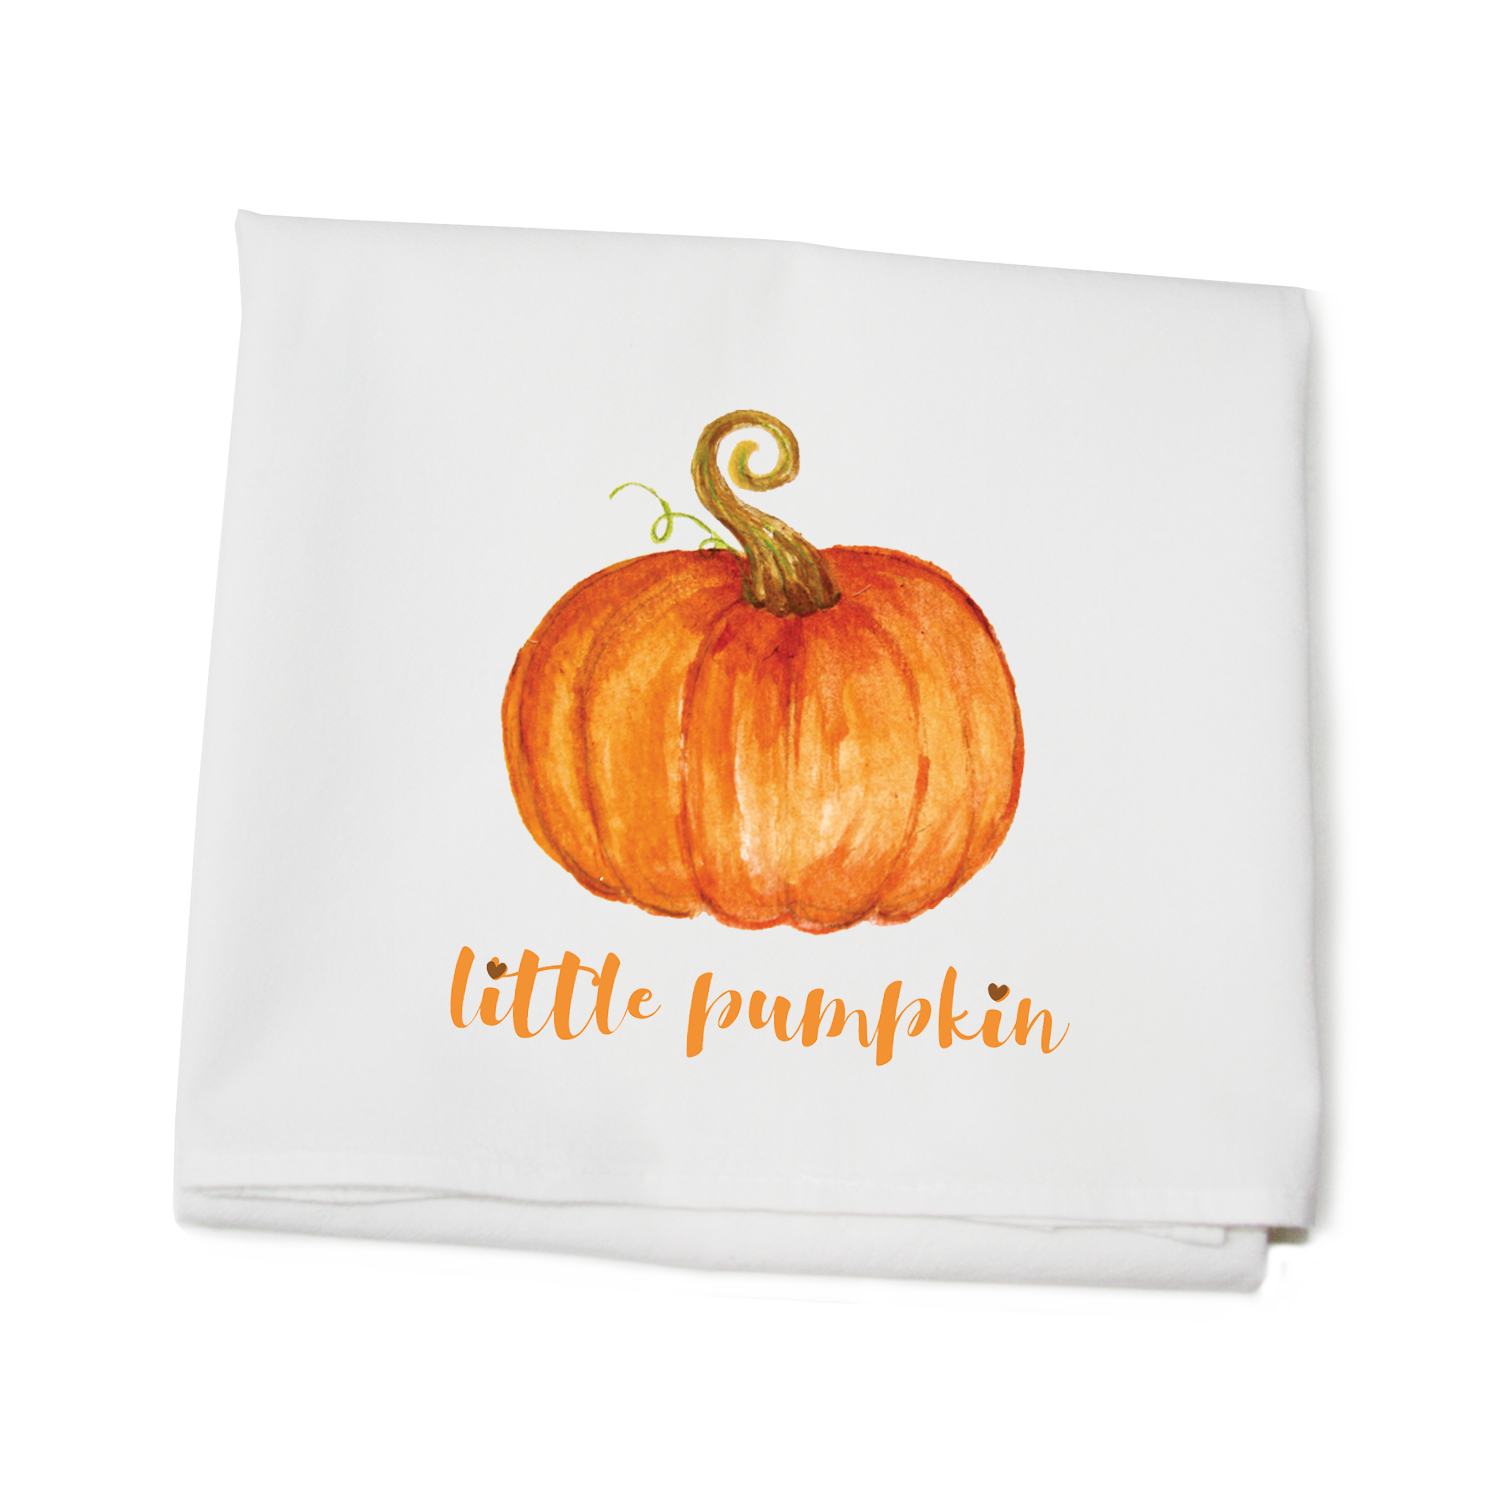 little pumpkin flour sack towel